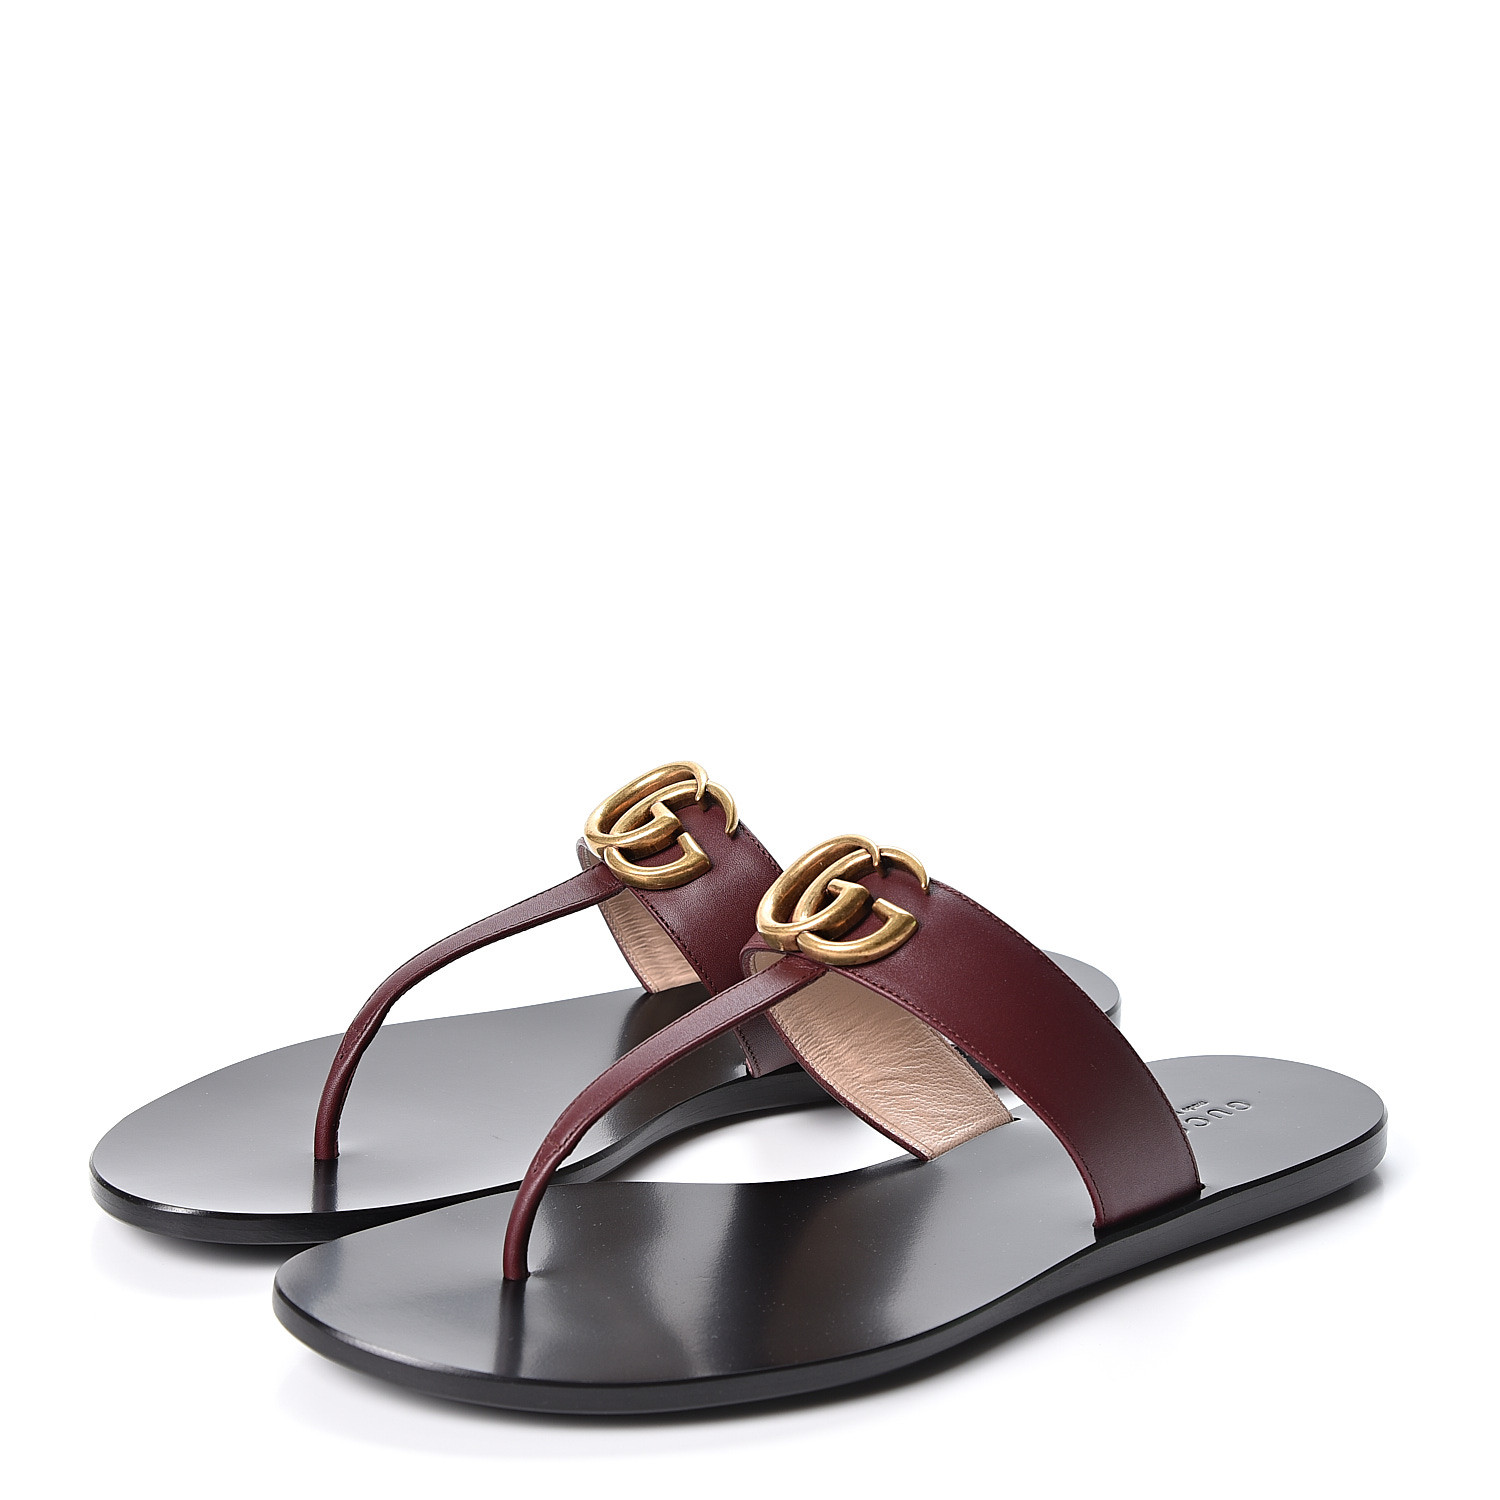 GUCCI Calfskin GG Marmont Thong Sandals 39.5 Burgundy 561056